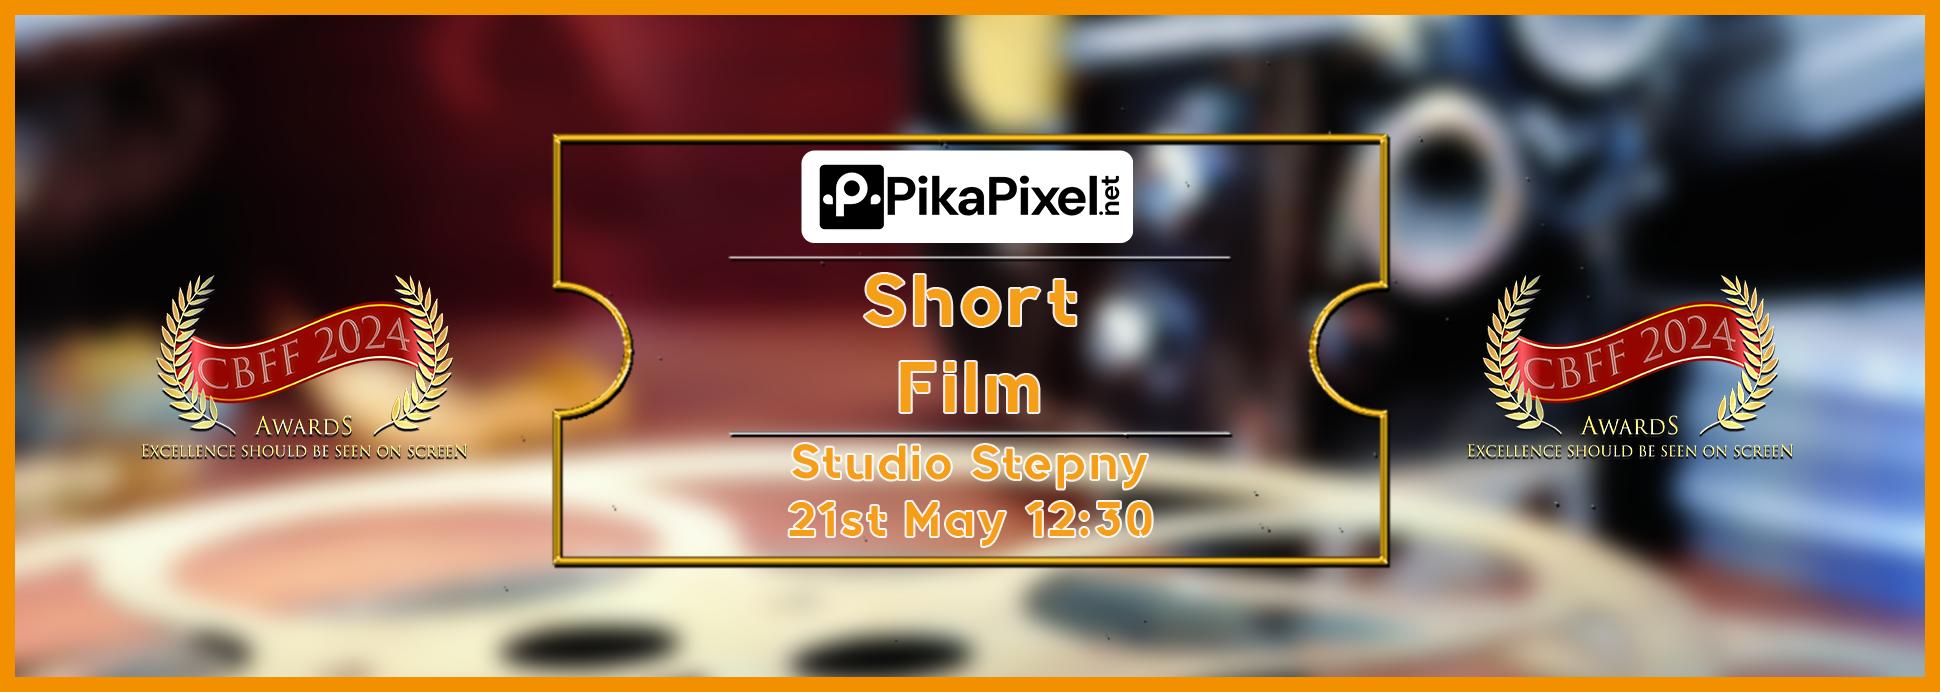 Tuesday 21st 12:30 Studio Stepny Short Film